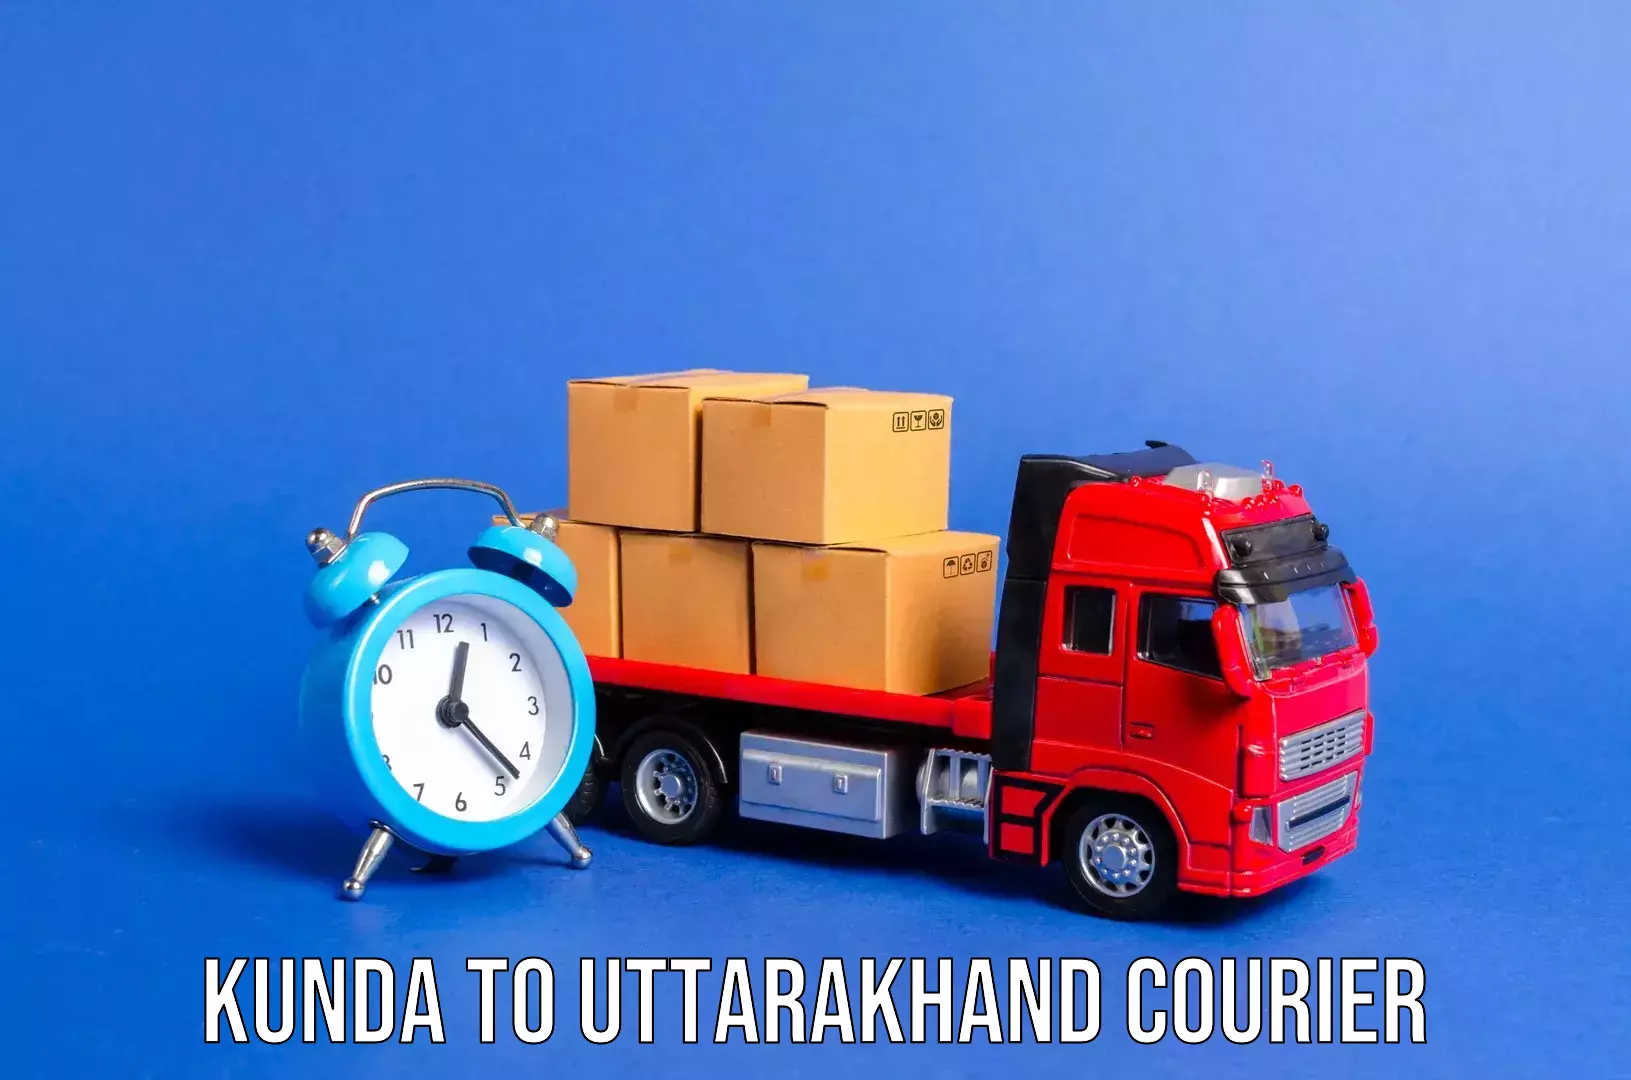 Luggage dispatch service Kunda to Uttarakhand